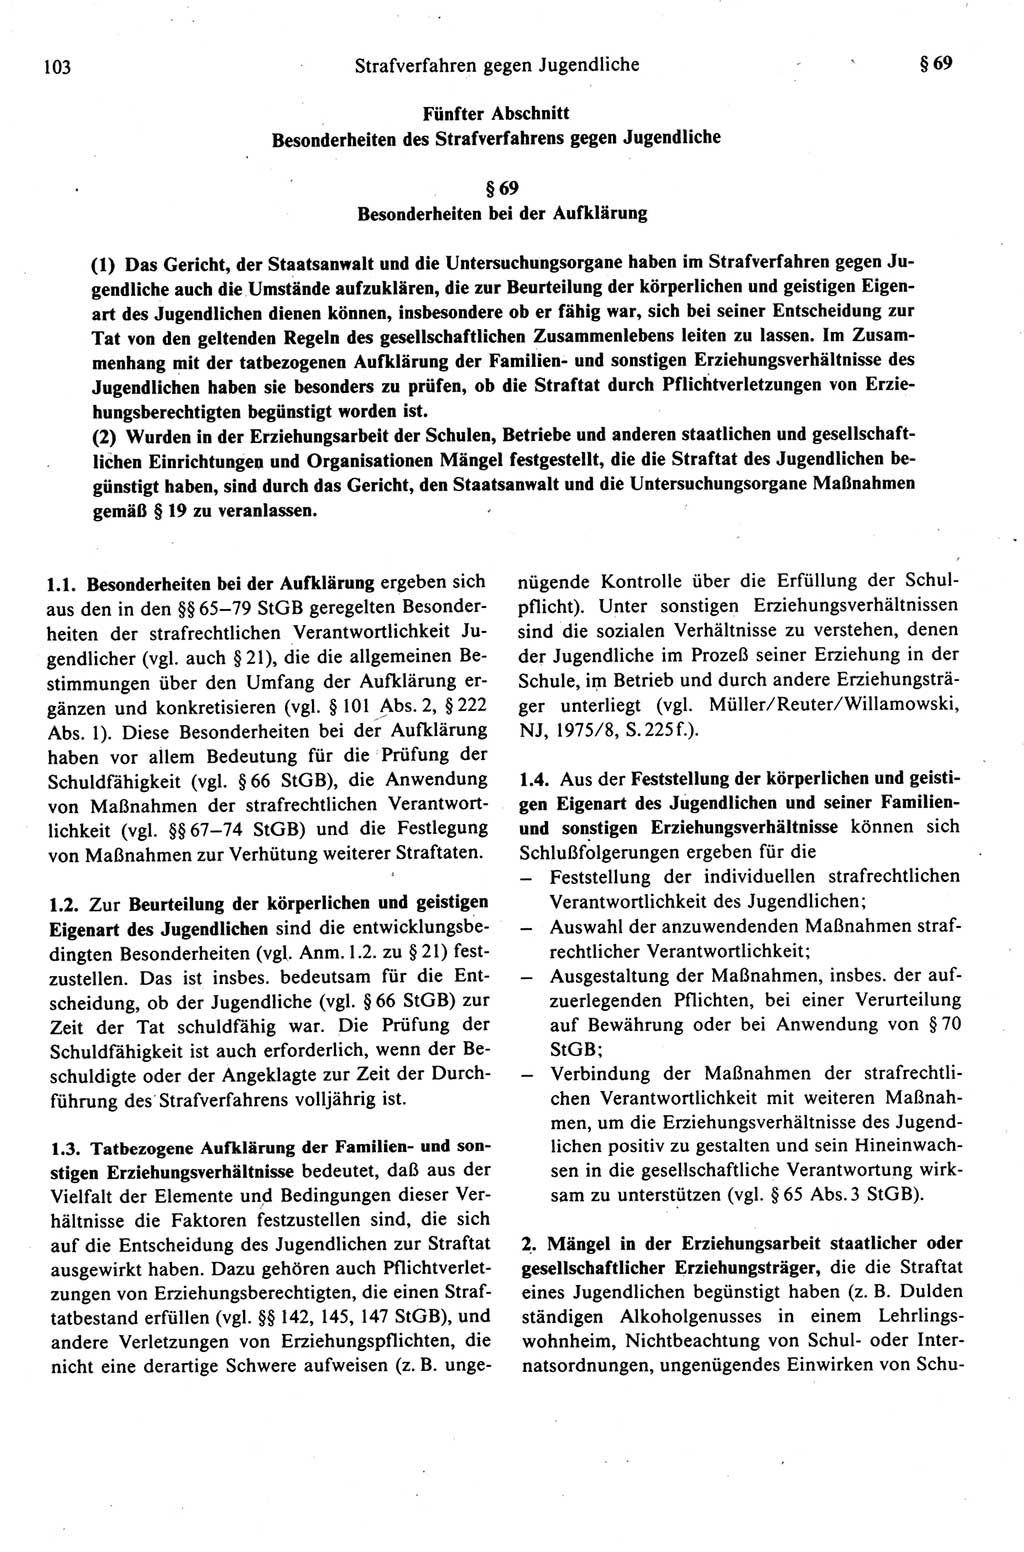 Strafprozeßrecht der DDR (Deutsche Demokratische Republik), Kommentar zur Strafprozeßordnung (StPO) 1989, Seite 103 (Strafprozeßr. DDR Komm. StPO 1989, S. 103)